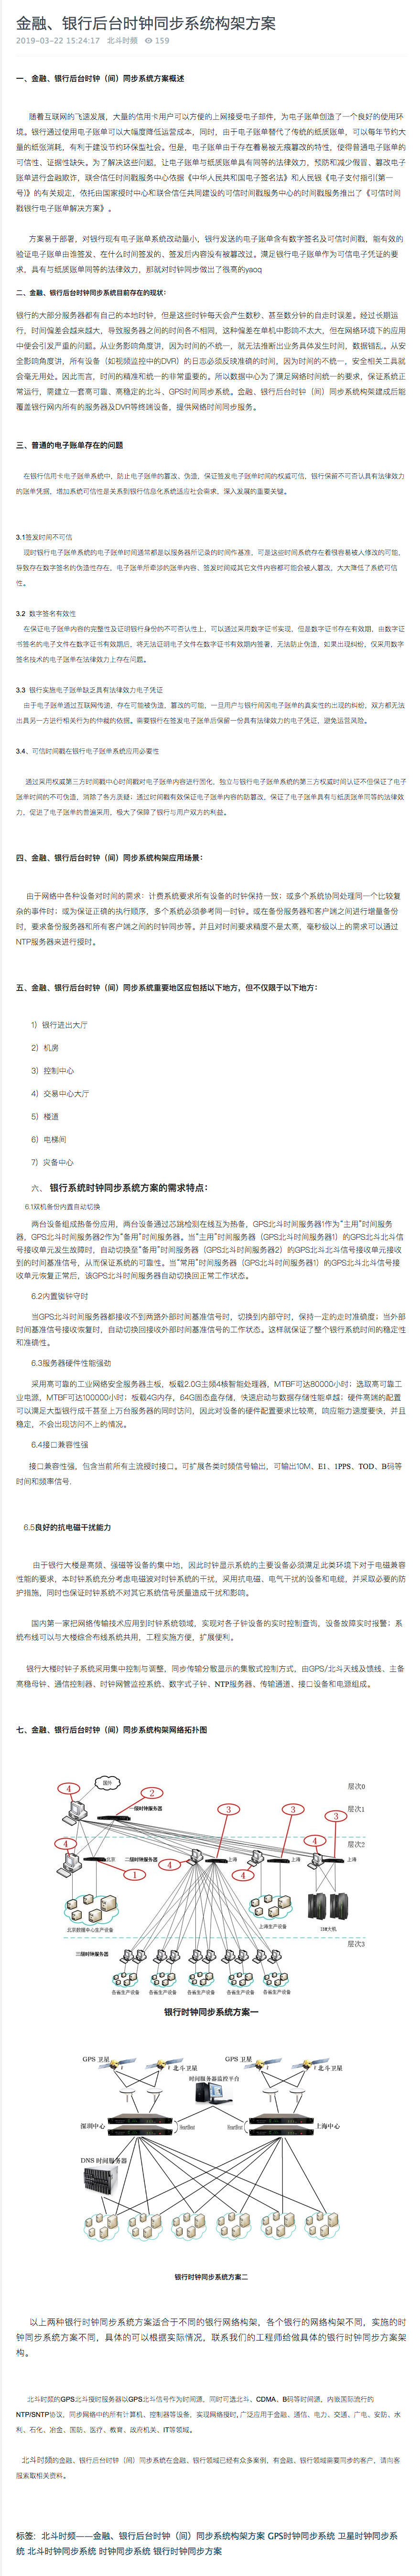 企服商城, 金融、银行后台时钟同步系统构架方案,北京北斗时间